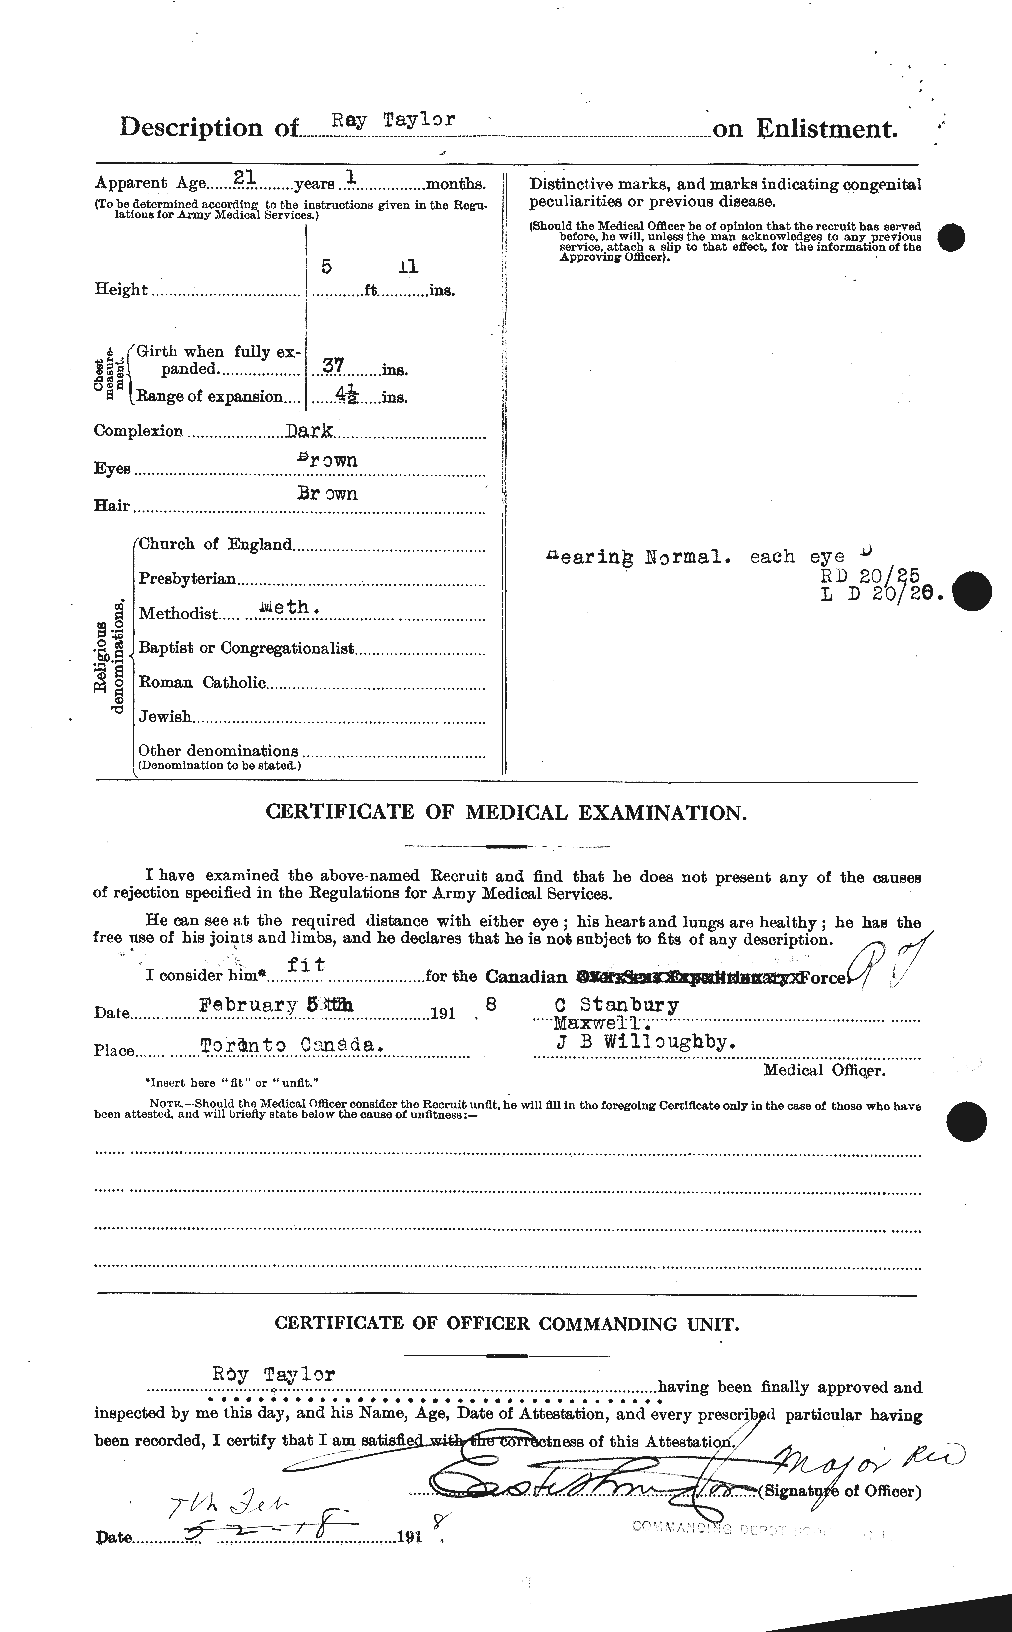 Dossiers du Personnel de la Première Guerre mondiale - CEC 627523b